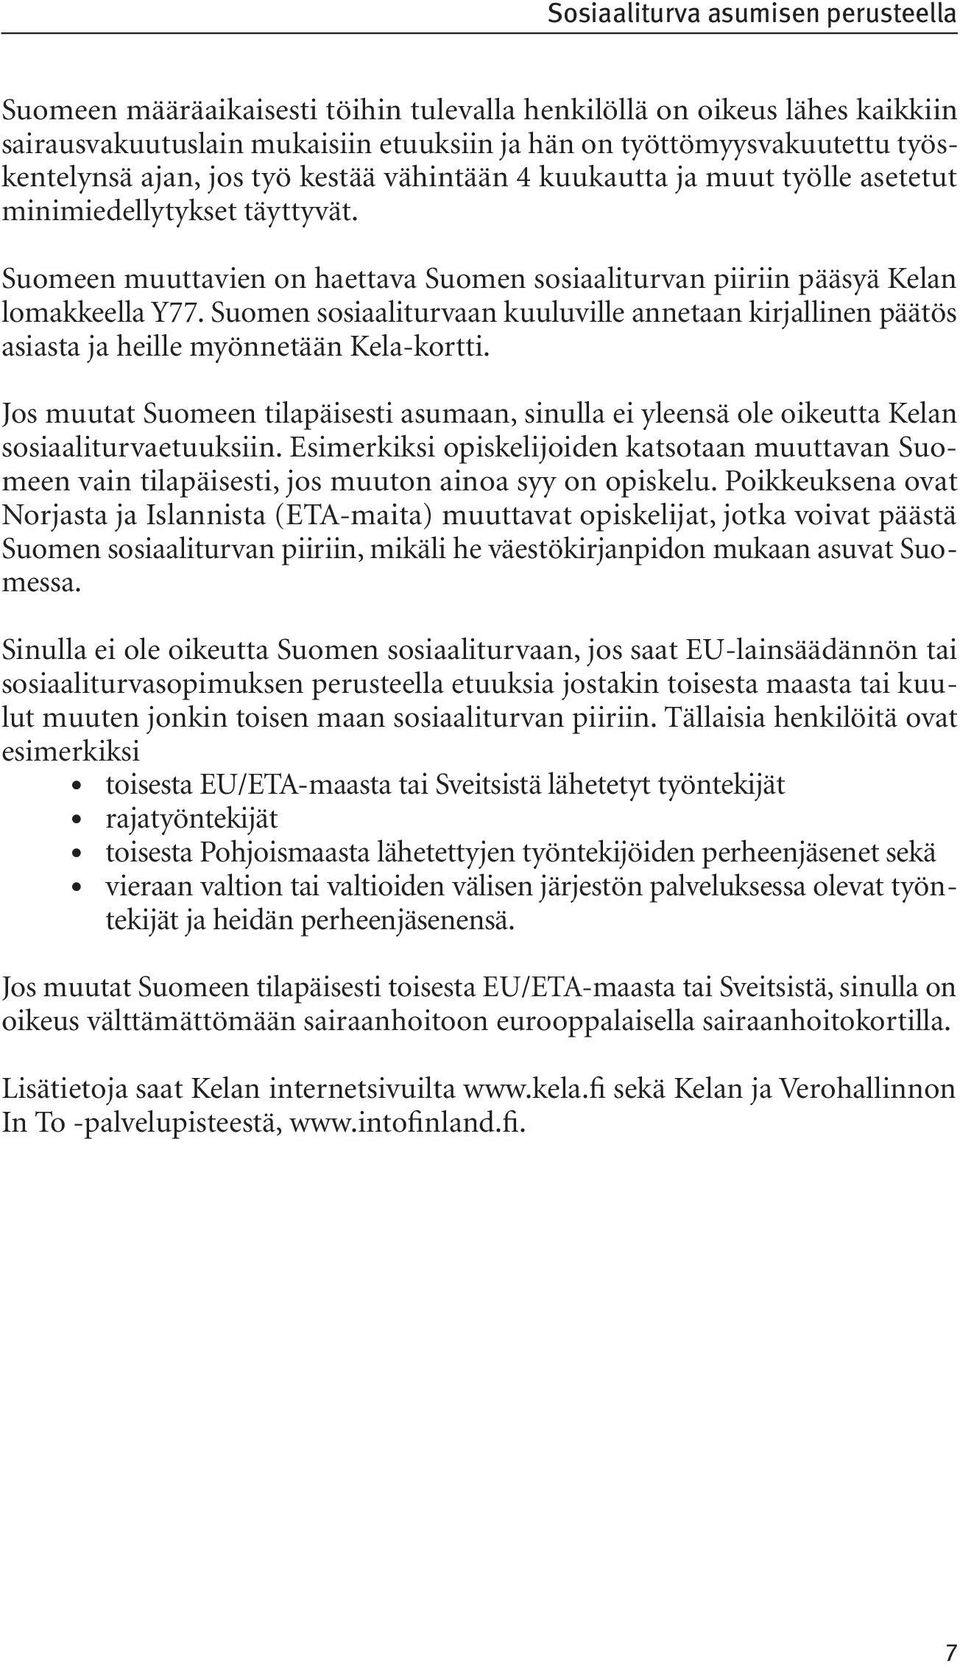 Suomen sosiaaliturvaan kuuluville annetaan kirjallinen päätös asiasta ja heille myönnetään Kela-kortti.